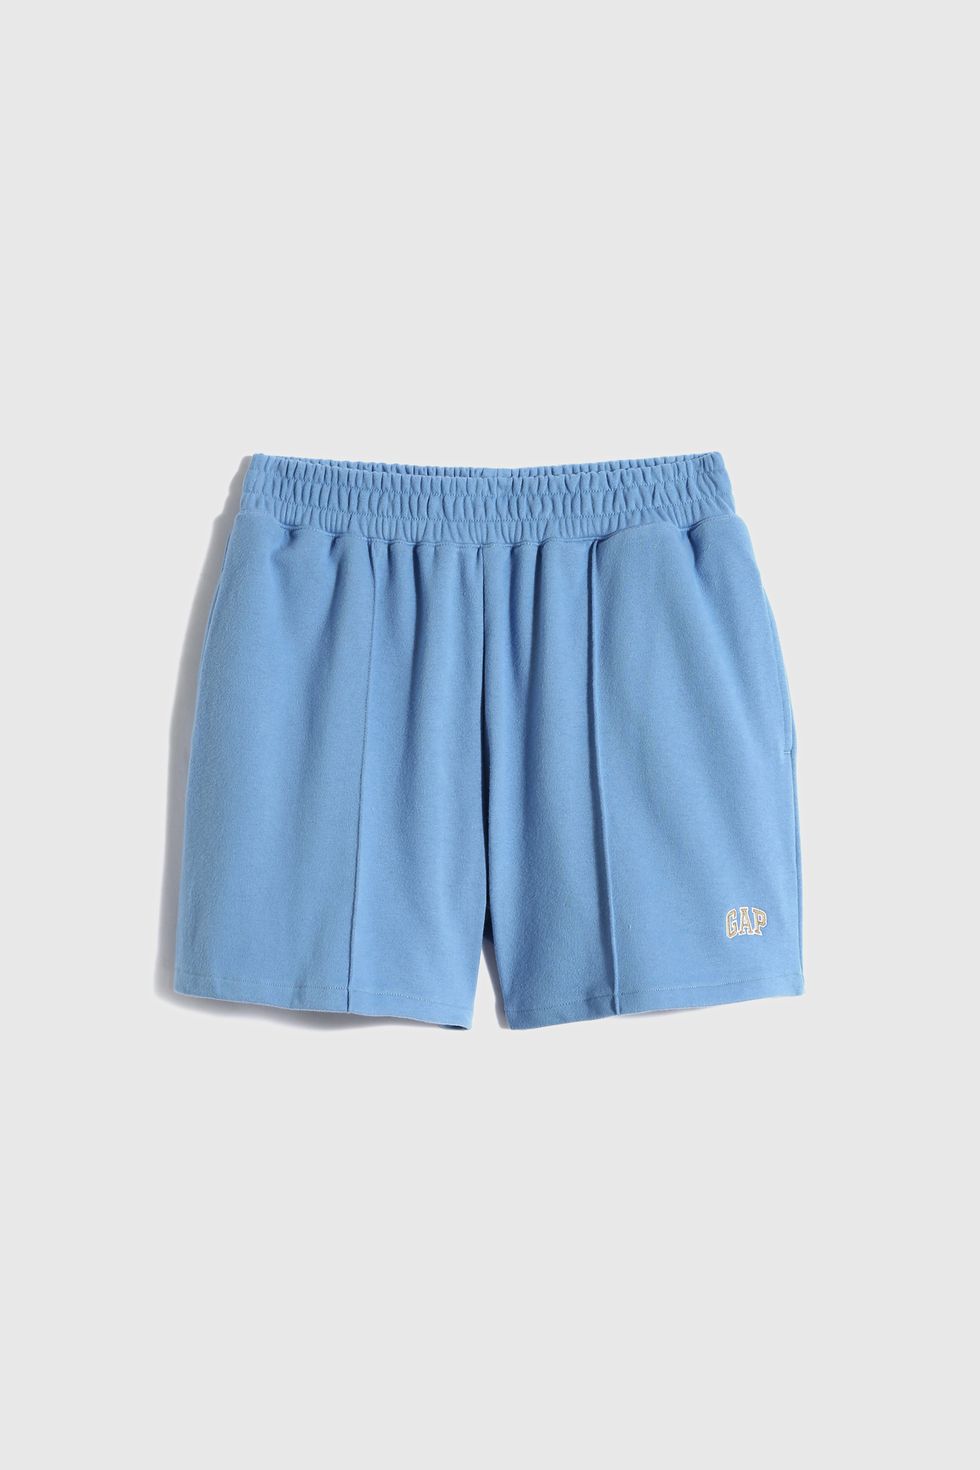 gap法式圈織 logo藍色休閒短褲